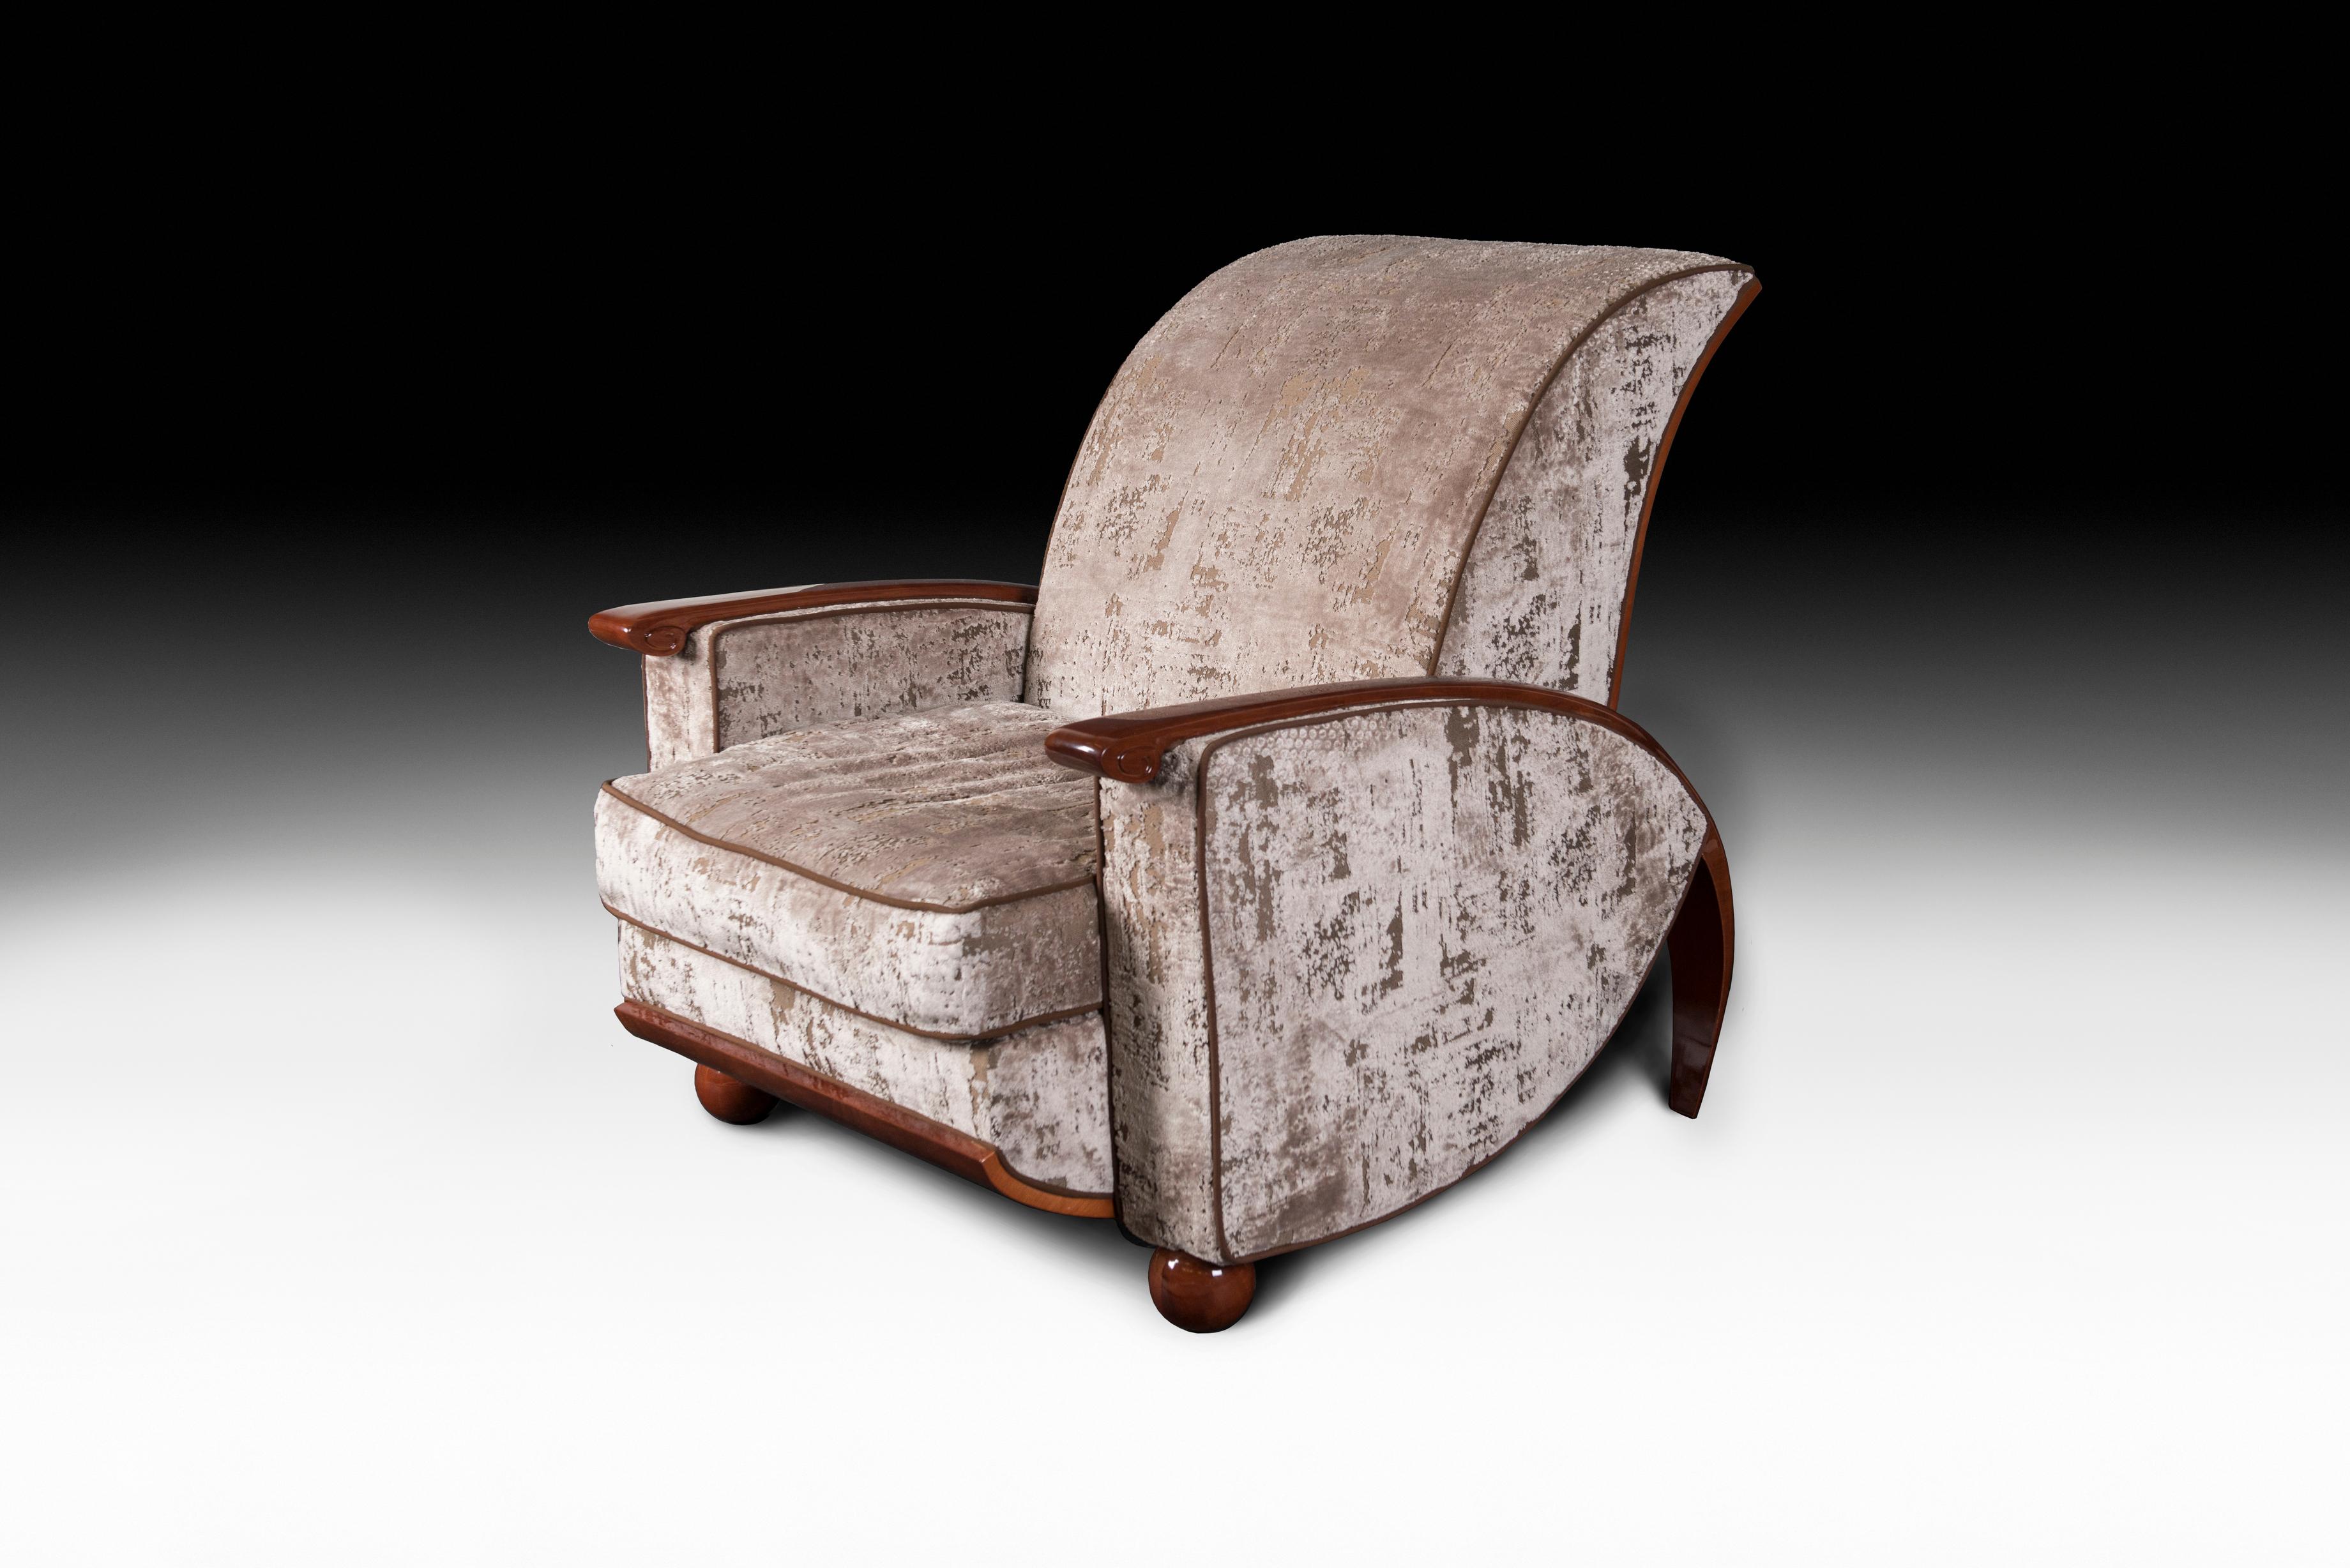 VG-Möbel stehen für Luxus im Sinne von Exklusivität, Auszeichnung und hoher Qualität. Sie sind das Ergebnis eines anspruchsvollen und exklusiven Designs mit einer starken Identität und sind das Ergebnis einer sorgfältigen Beachtung der typischen